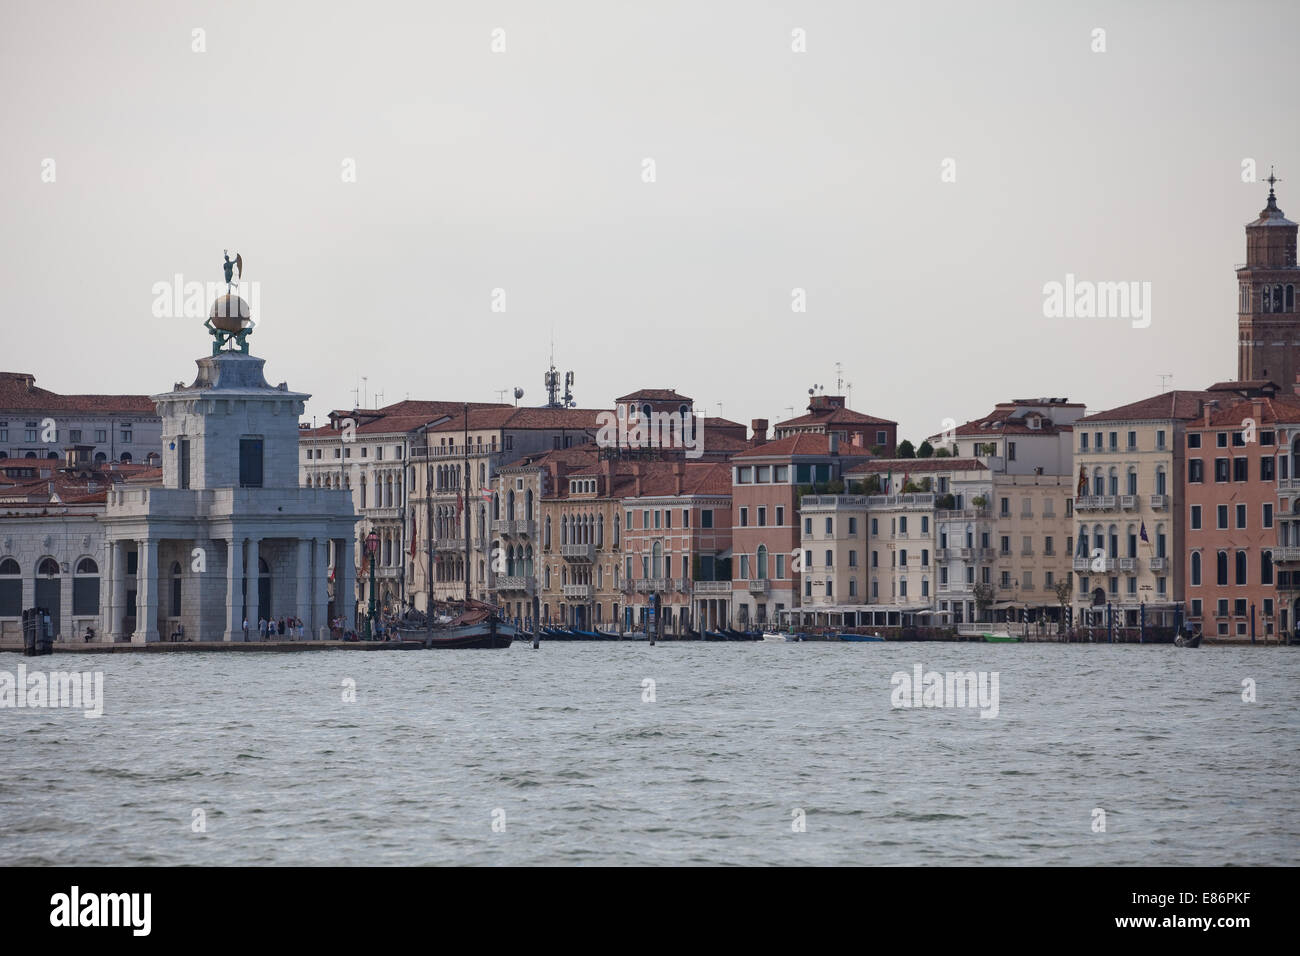 Venise, Italie,les grands canaux d'entrée de la lagune,ouvert,une véritable mer de bâtiments, de ponts, de campaniles,gondoles p Banque D'Images